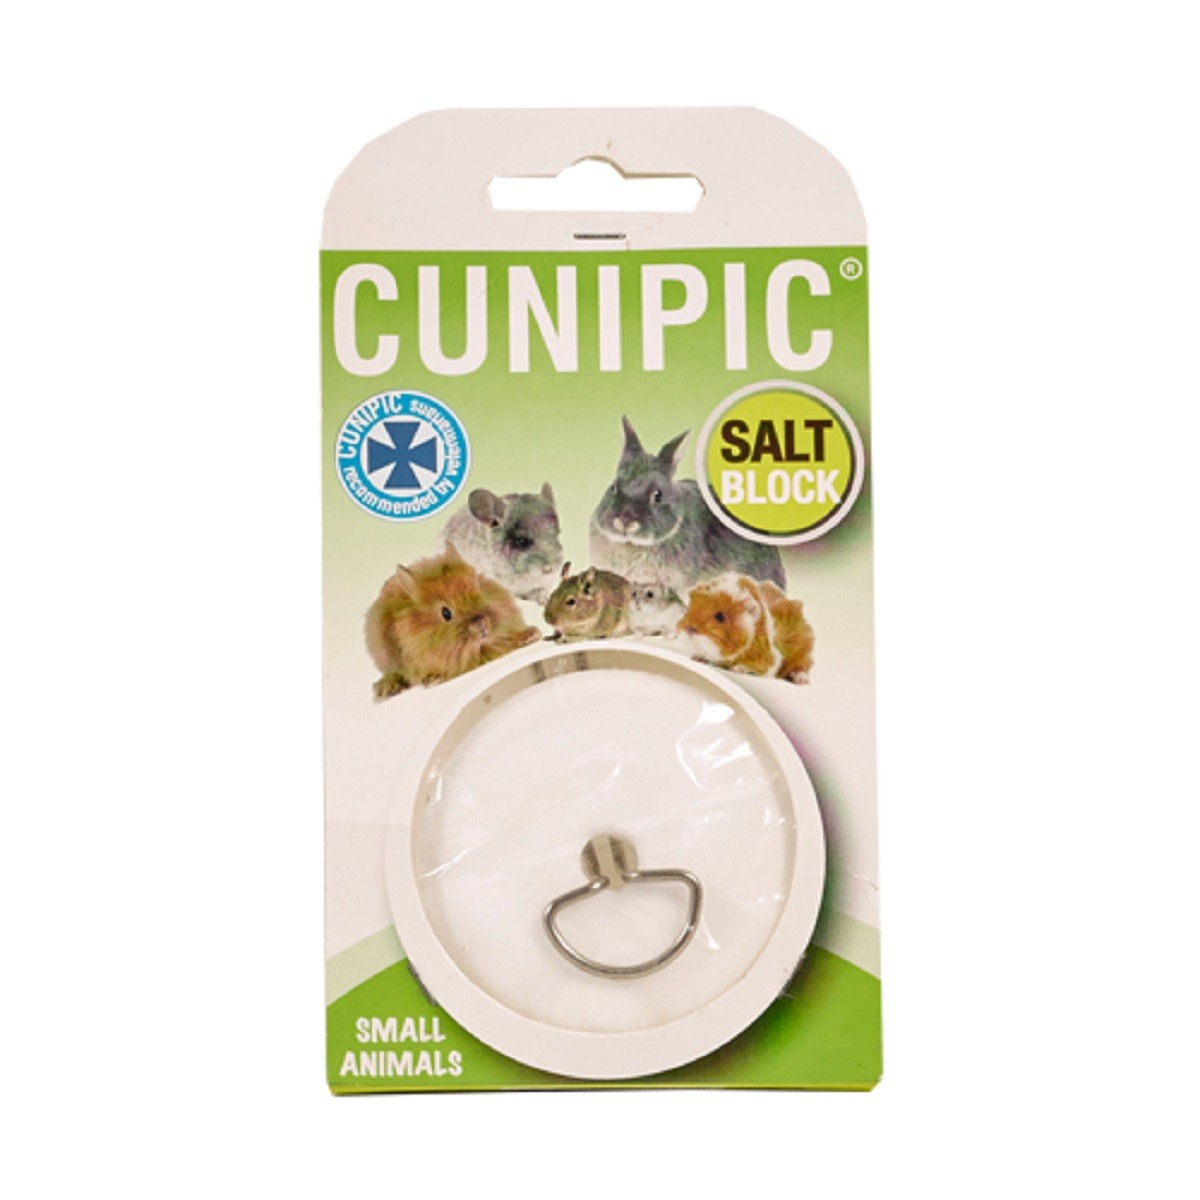 Cunipic Bloco de sal mineral para pequenos animais